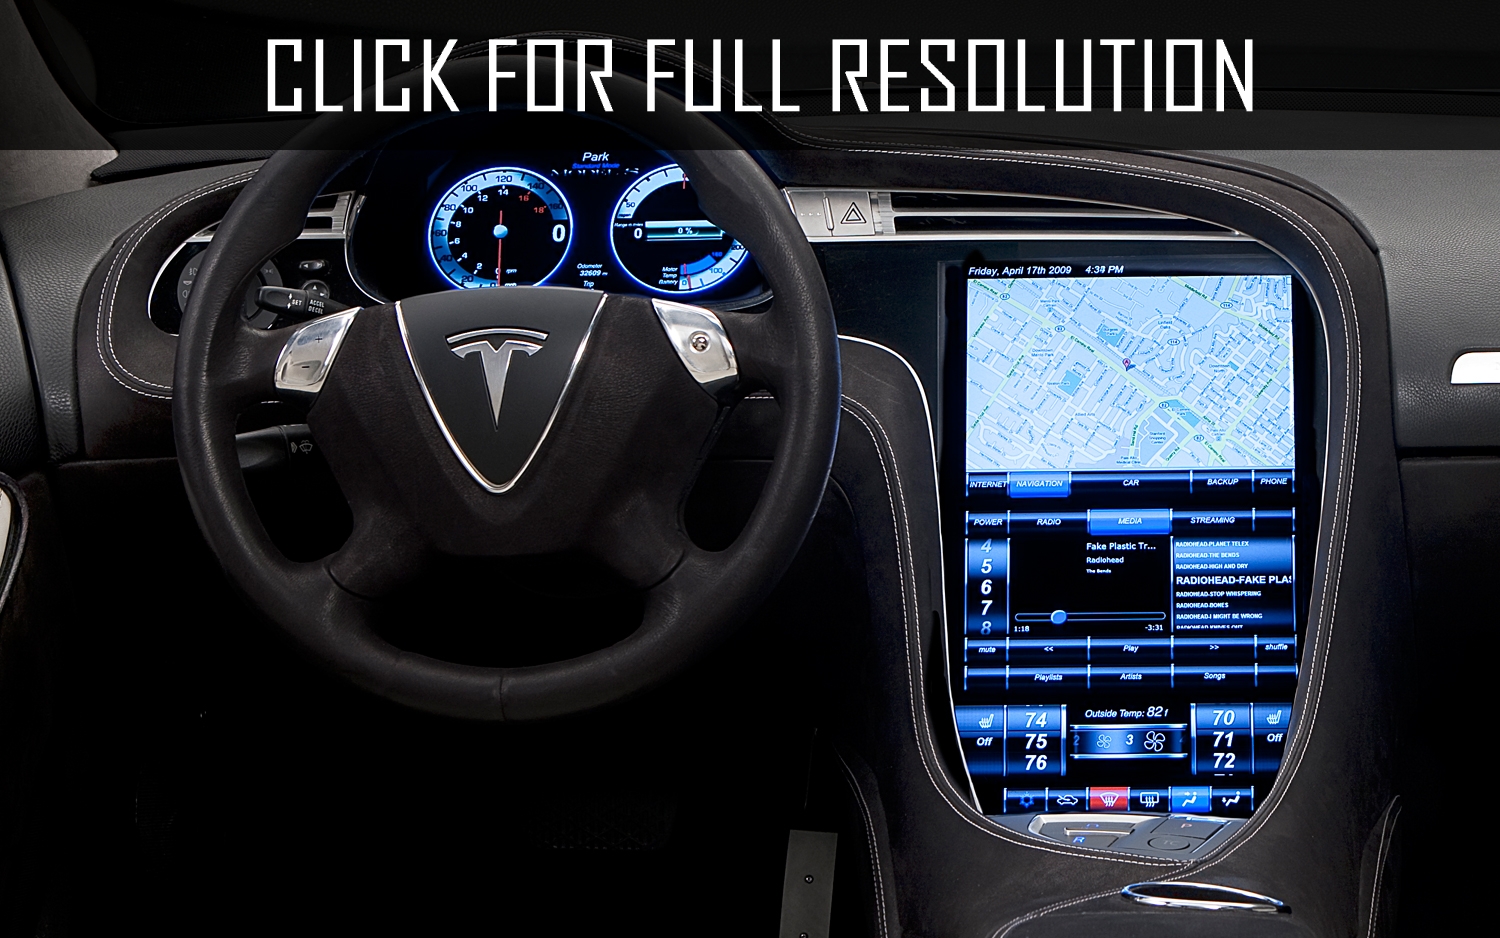 Kast Verval Hesje 2012 Tesla Model S best image gallery #7/15 - share and download